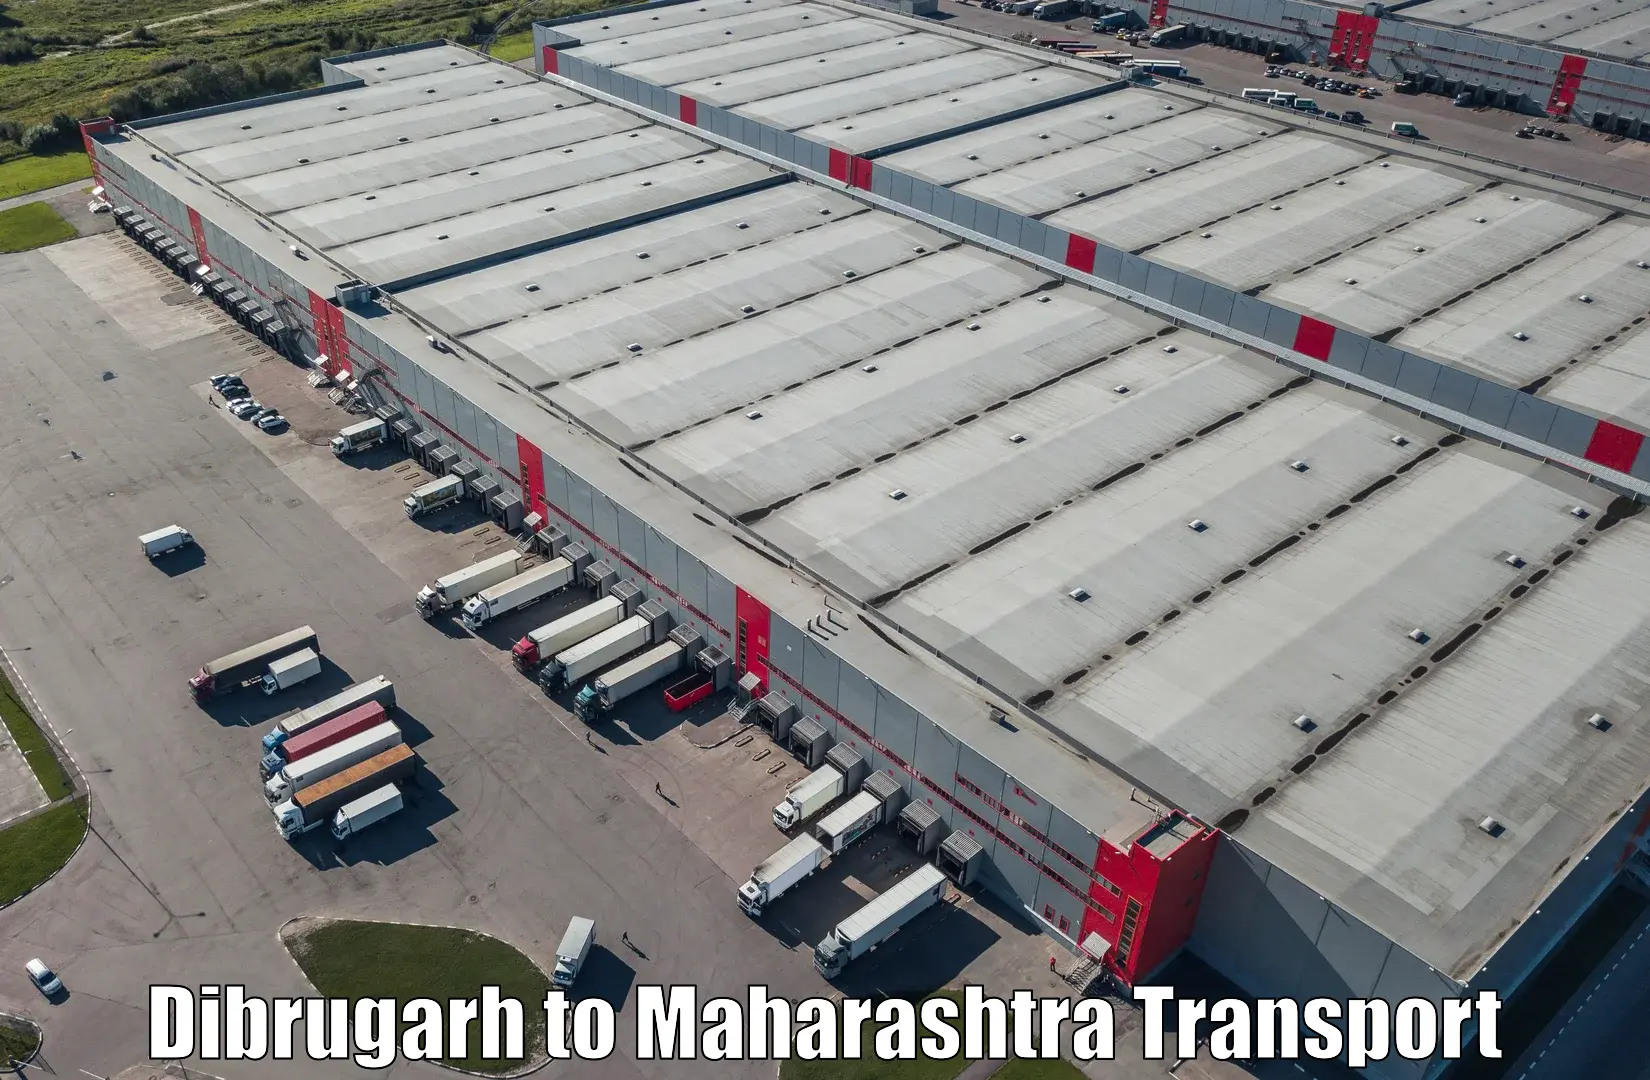 Online transport service Dibrugarh to Dusarbid